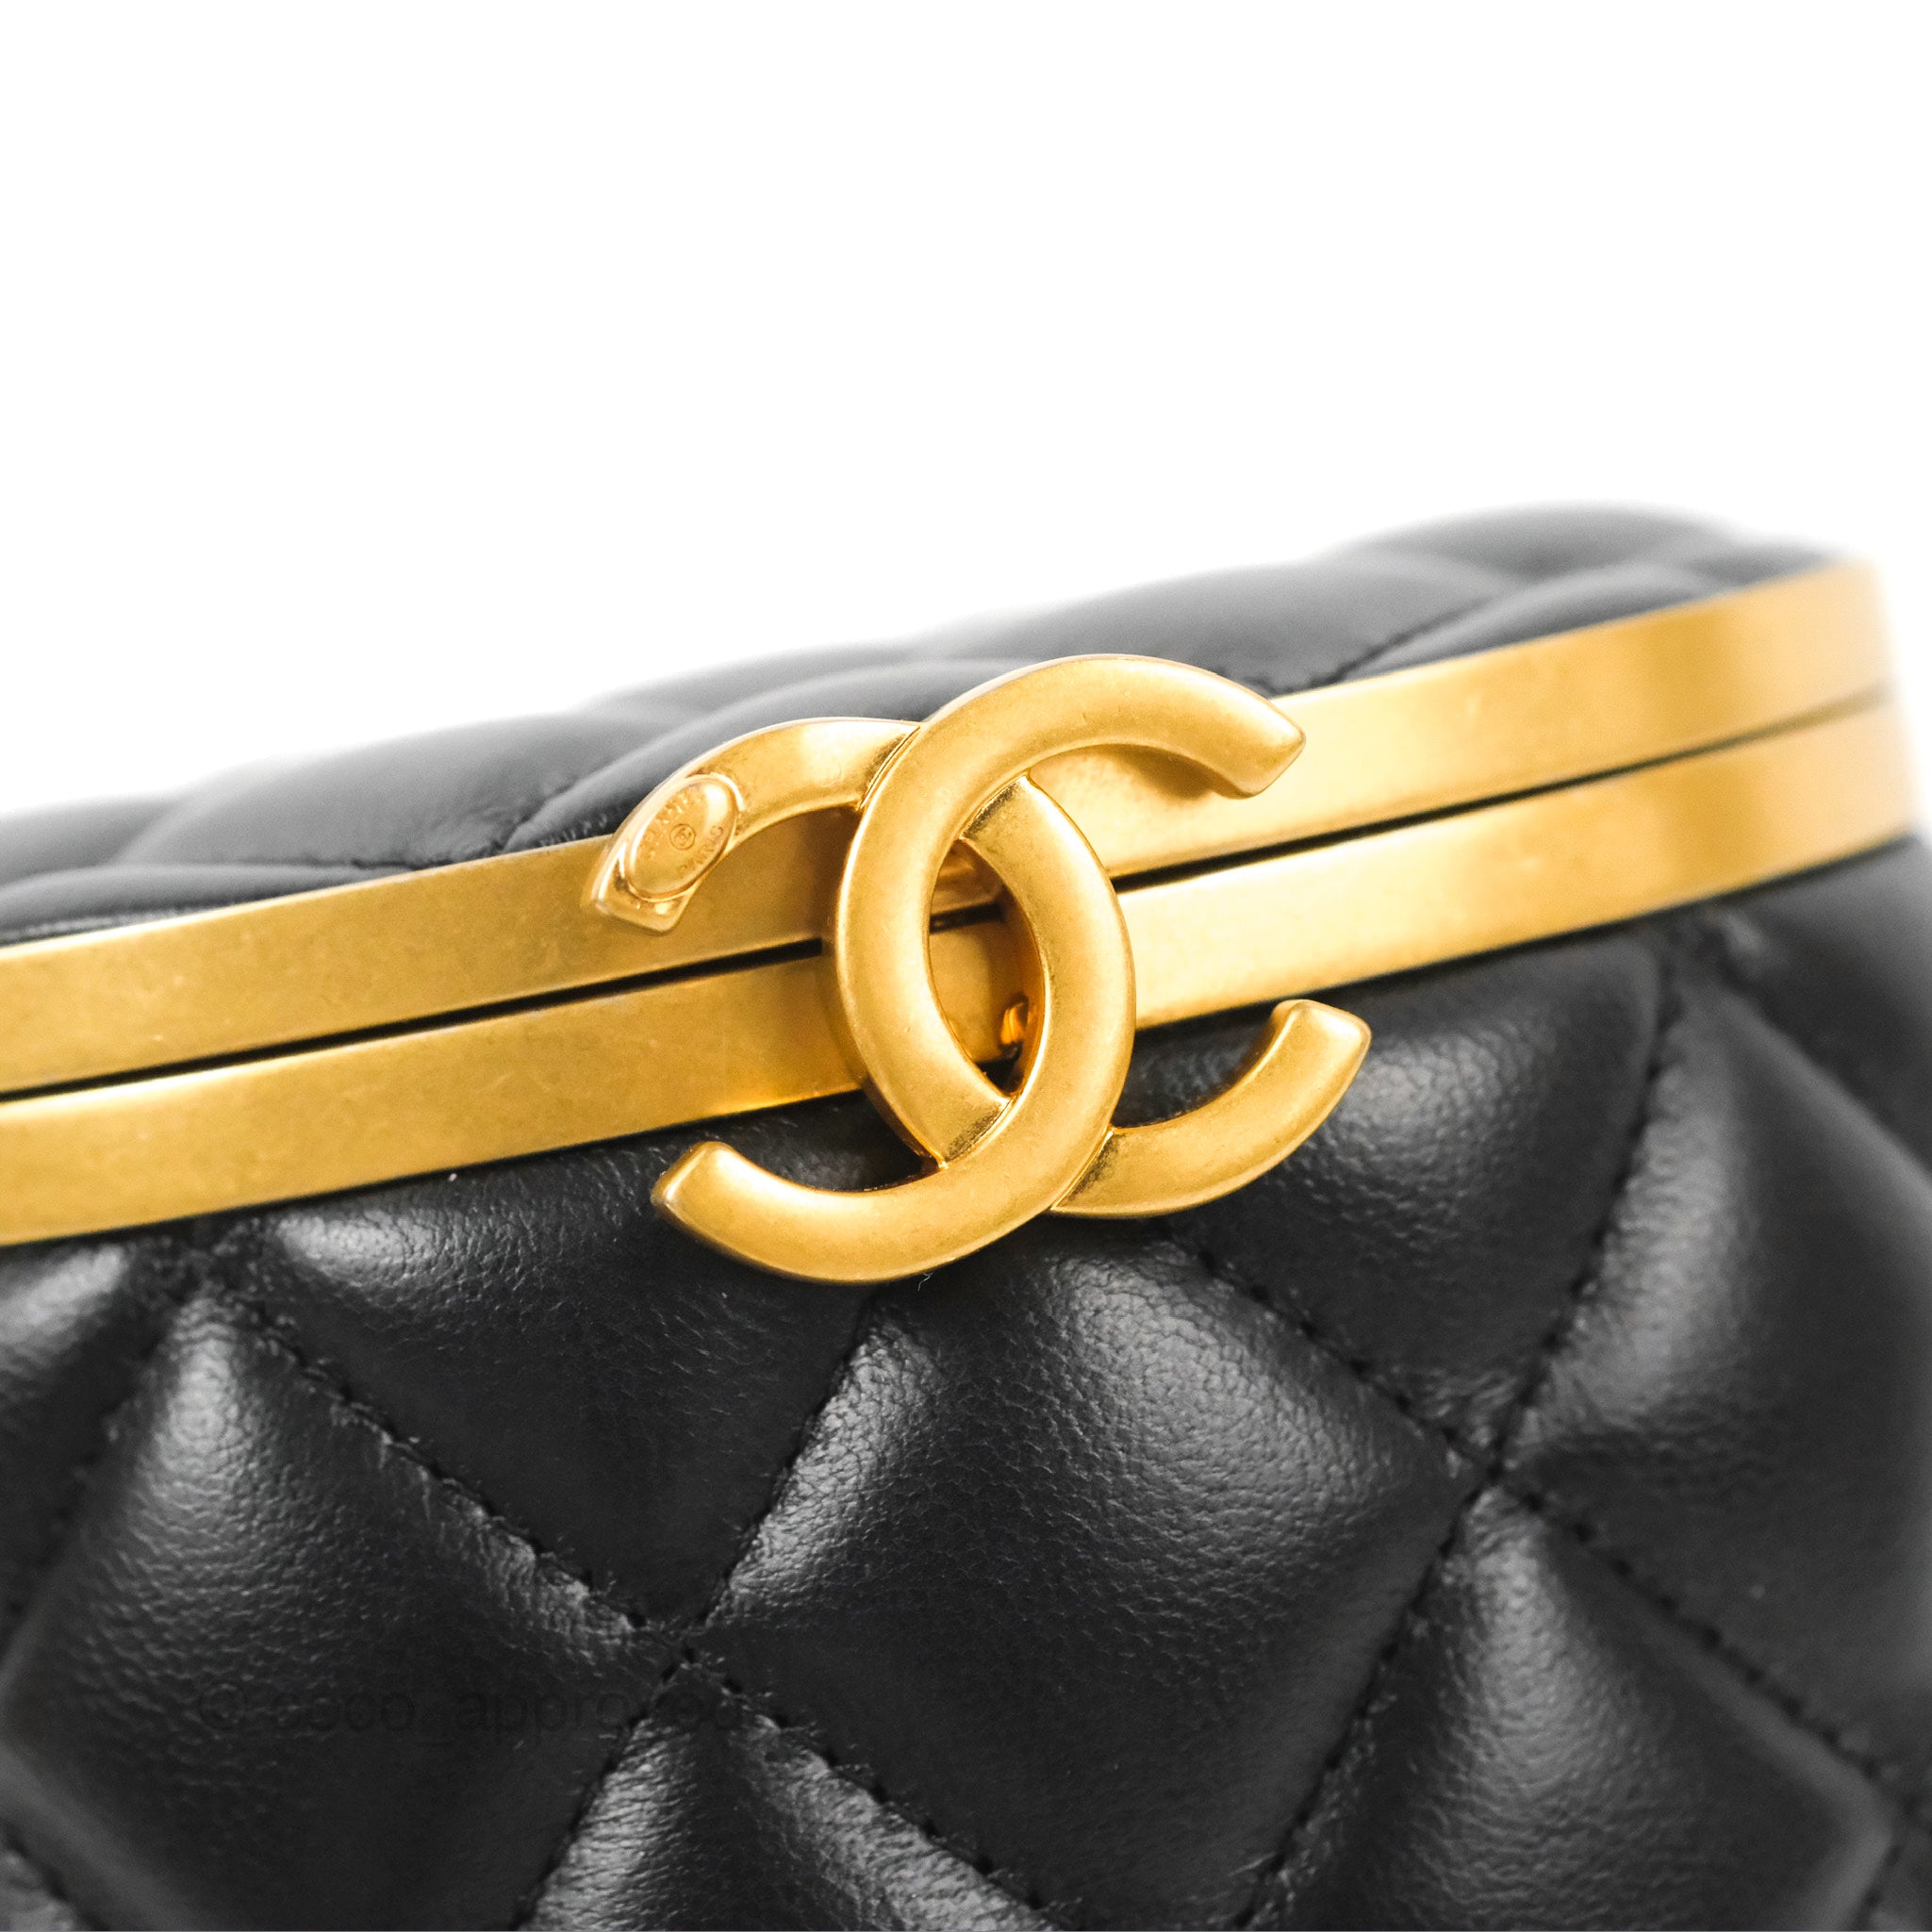 Authentic Chanel Bag Vintage Black W/ Gold Cc Logo